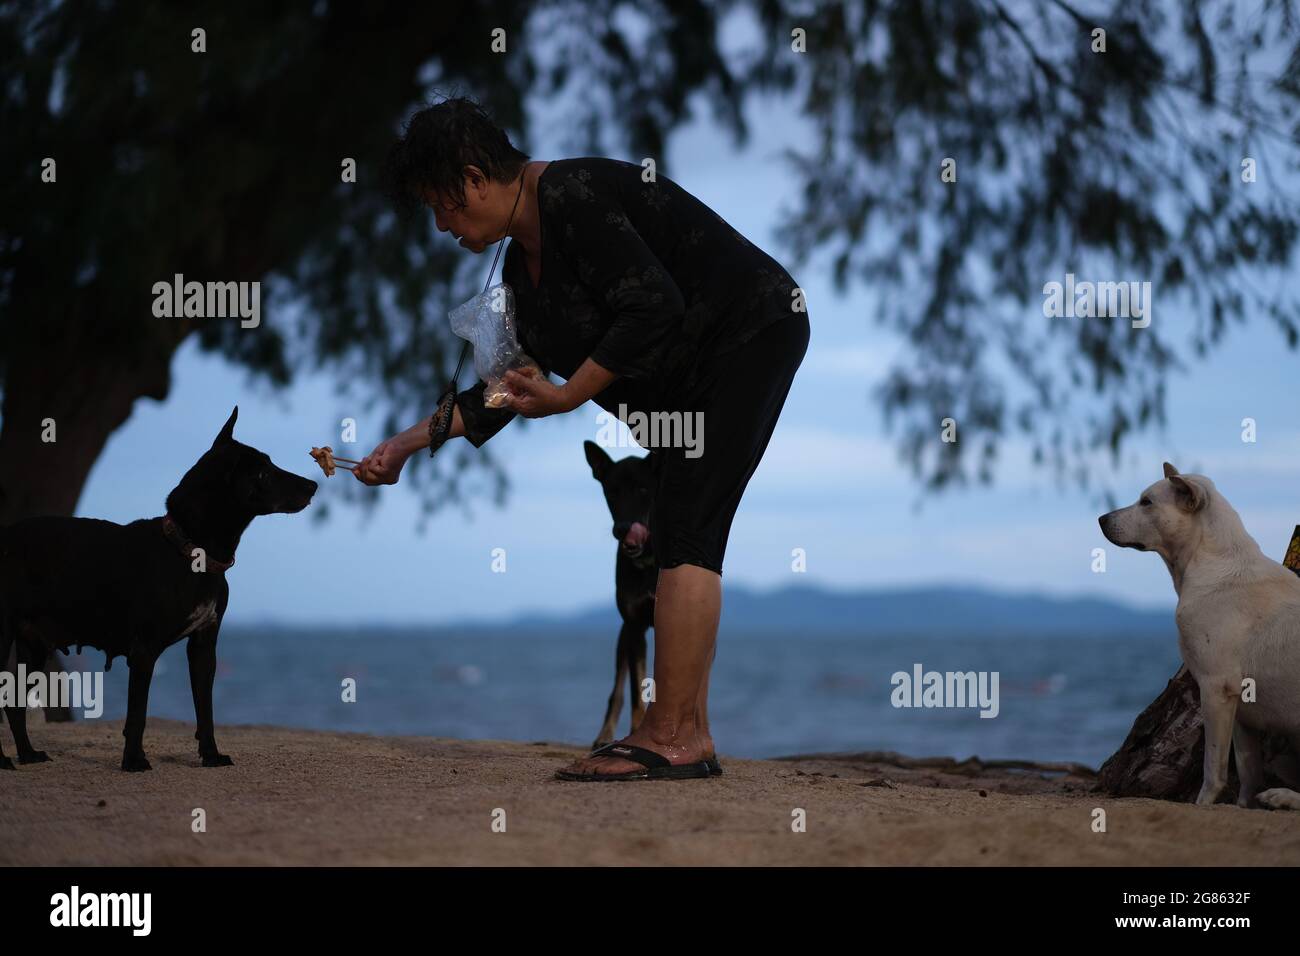 Une femme au hasard nourrit trois chiens errants qui attendent leur tour sur une plage Banque D'Images